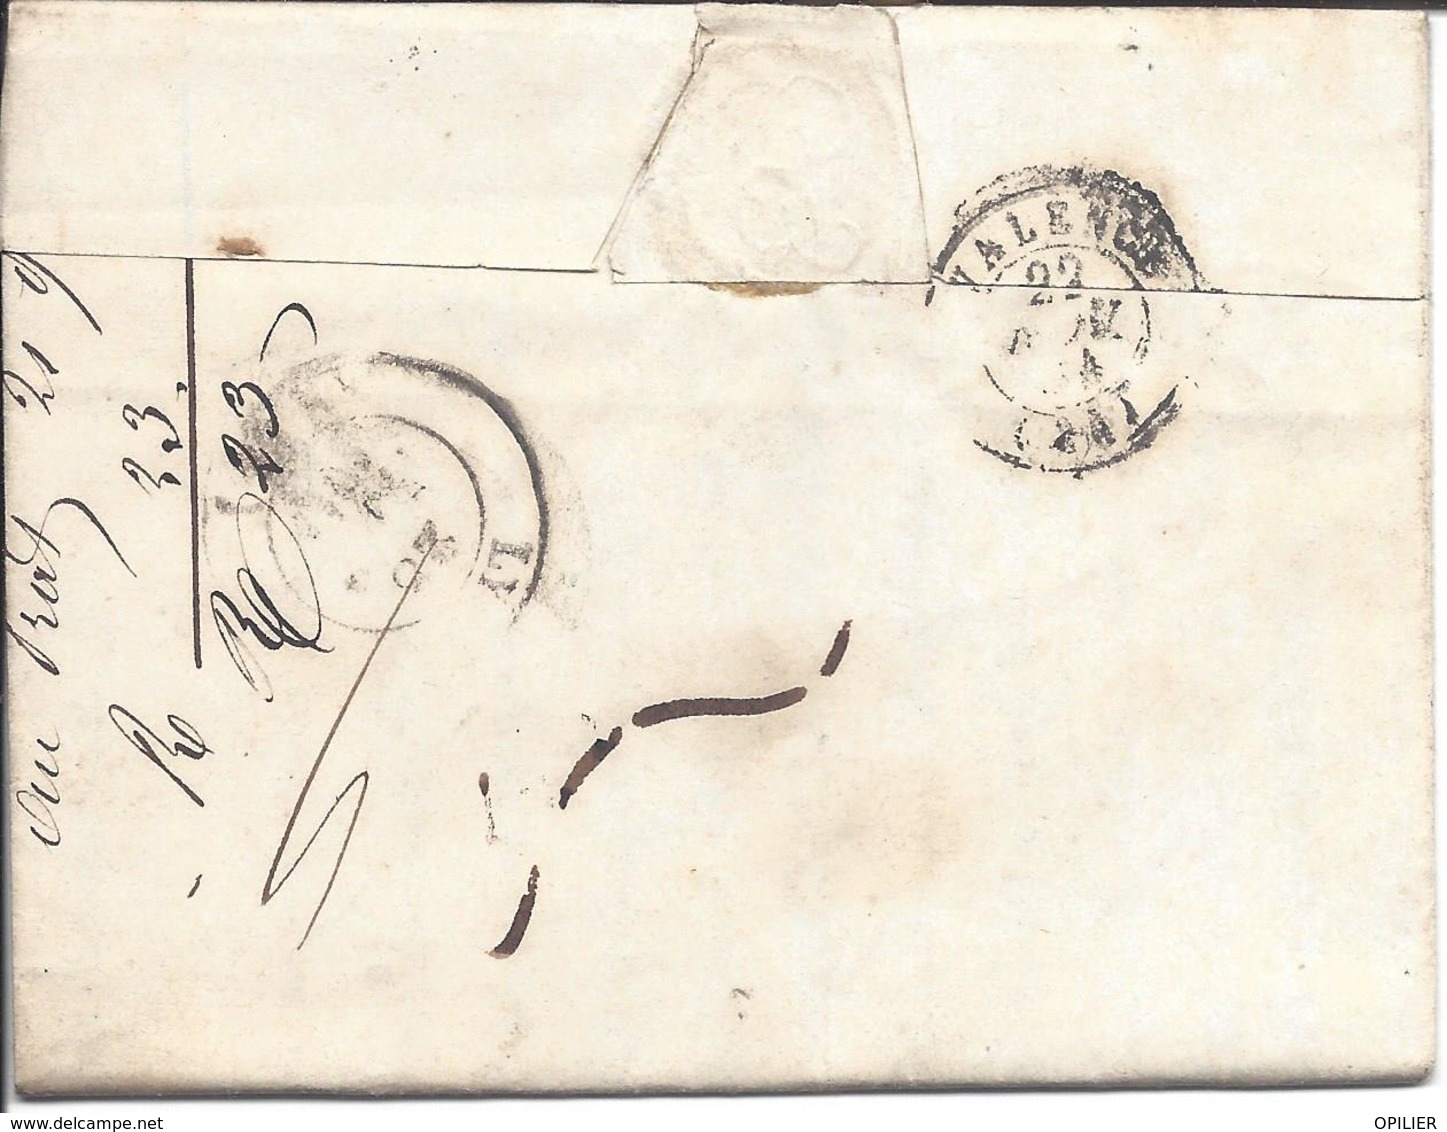 JOYEUSE ARDECHE 5 lettres avec cachet 12 pour LYON (3 de 1844 + 2 de 1848)